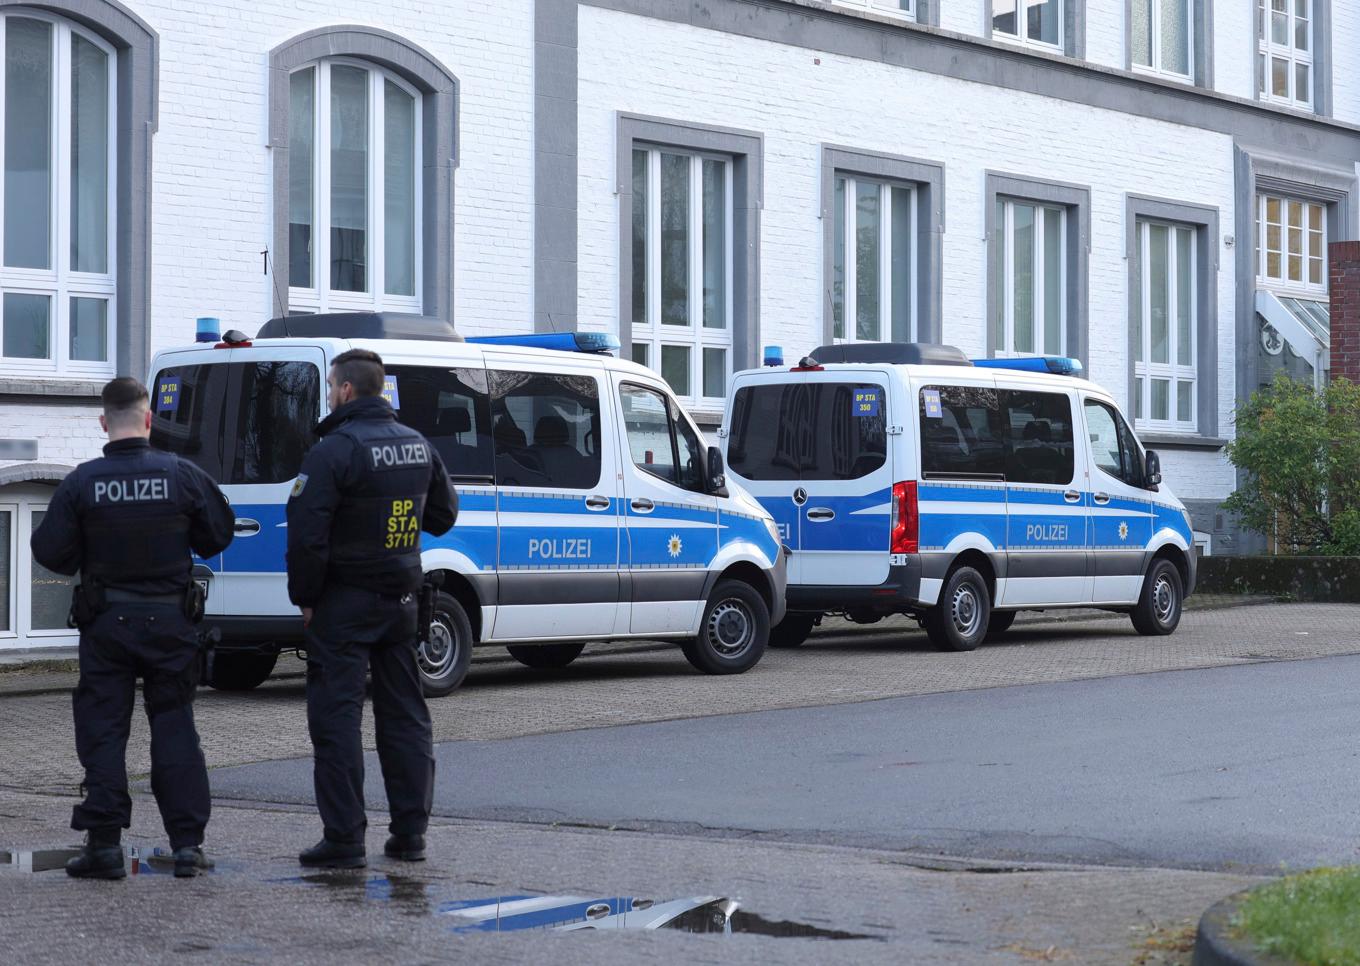 Polis vid onsdagens ingripande mot misstänkta människosmugglare i tyska Solingen. Foto: Gianni Gattus/AP/TT